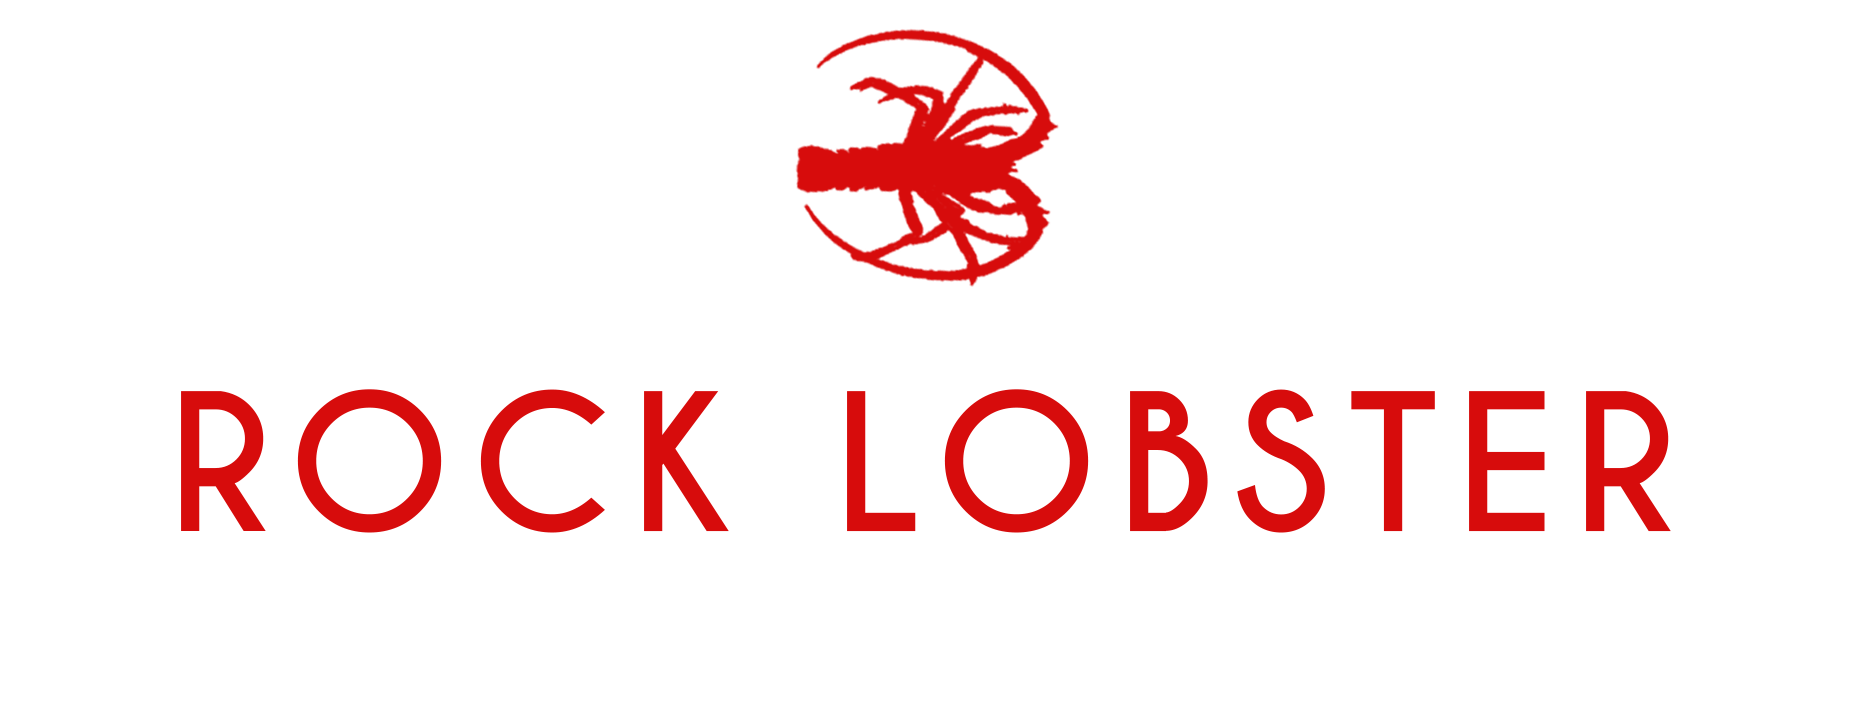 Fremantle Rock Lobster Tours